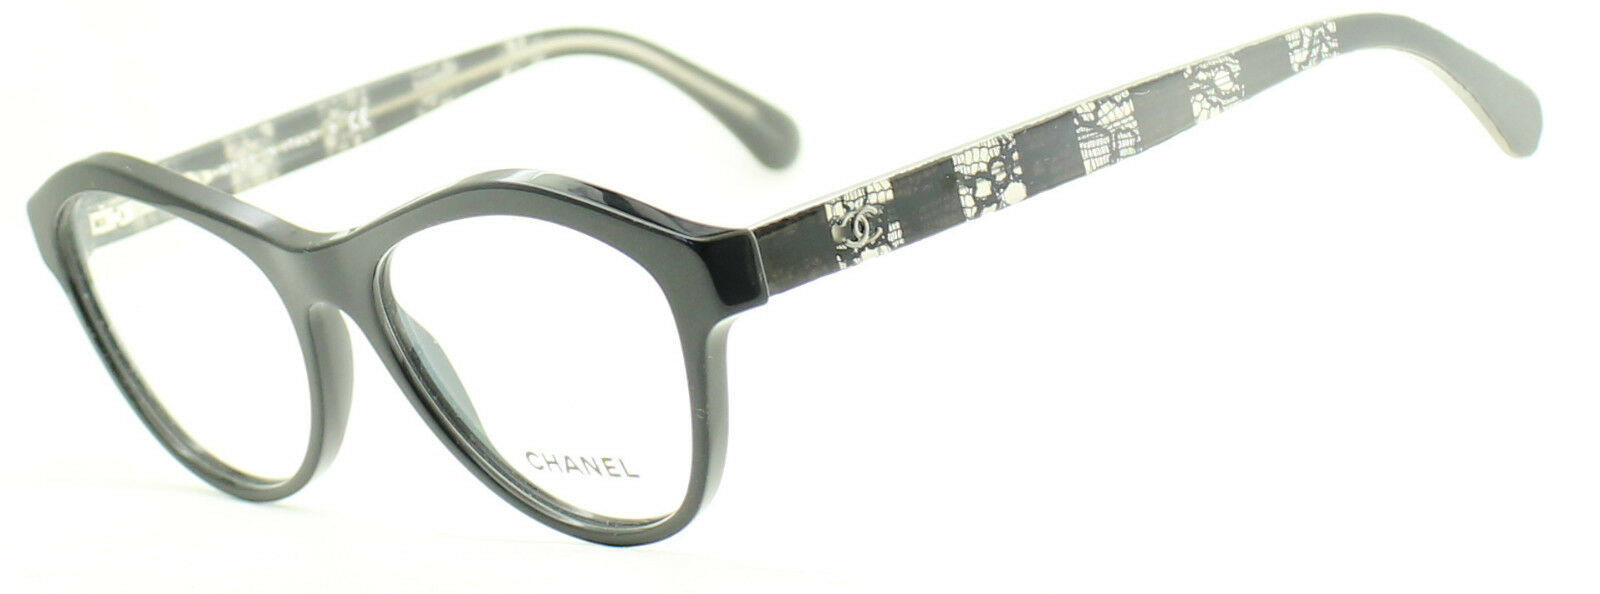 CHANEL Eyeglass Frames 1506-T c. 501 Women’s Men’s Glasses Black & Titanium  $599